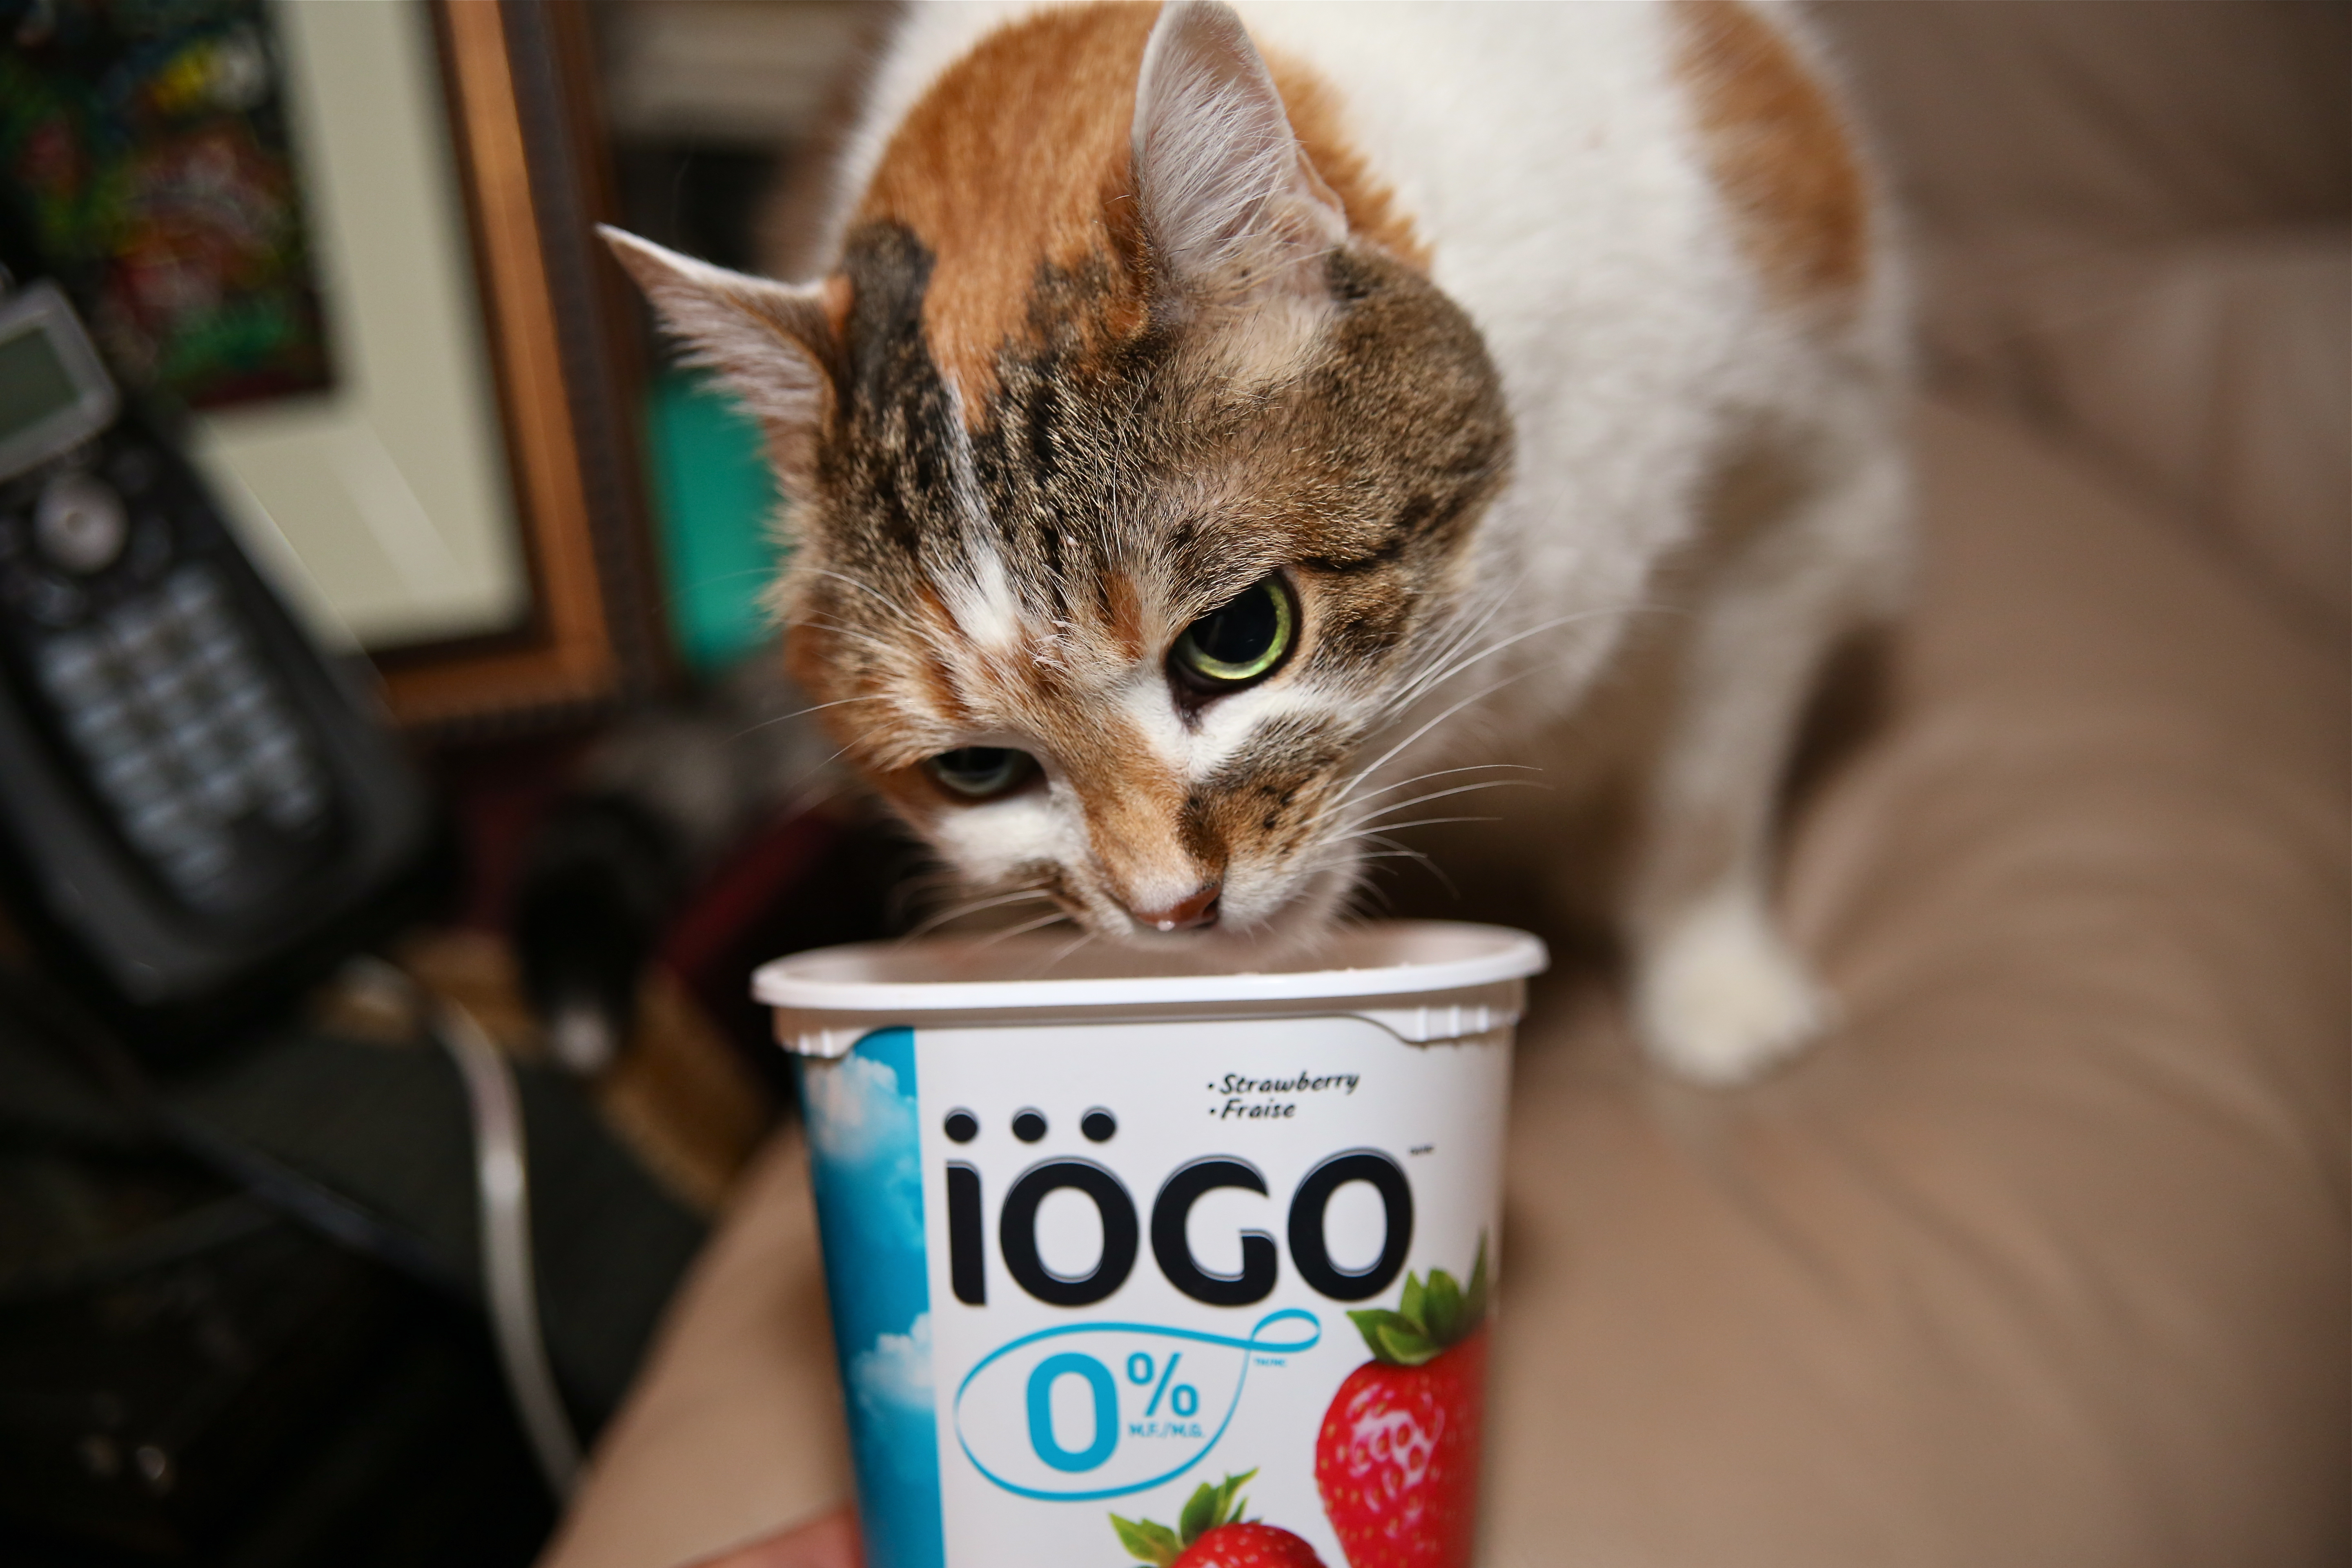 Probiotics are found in yogurt